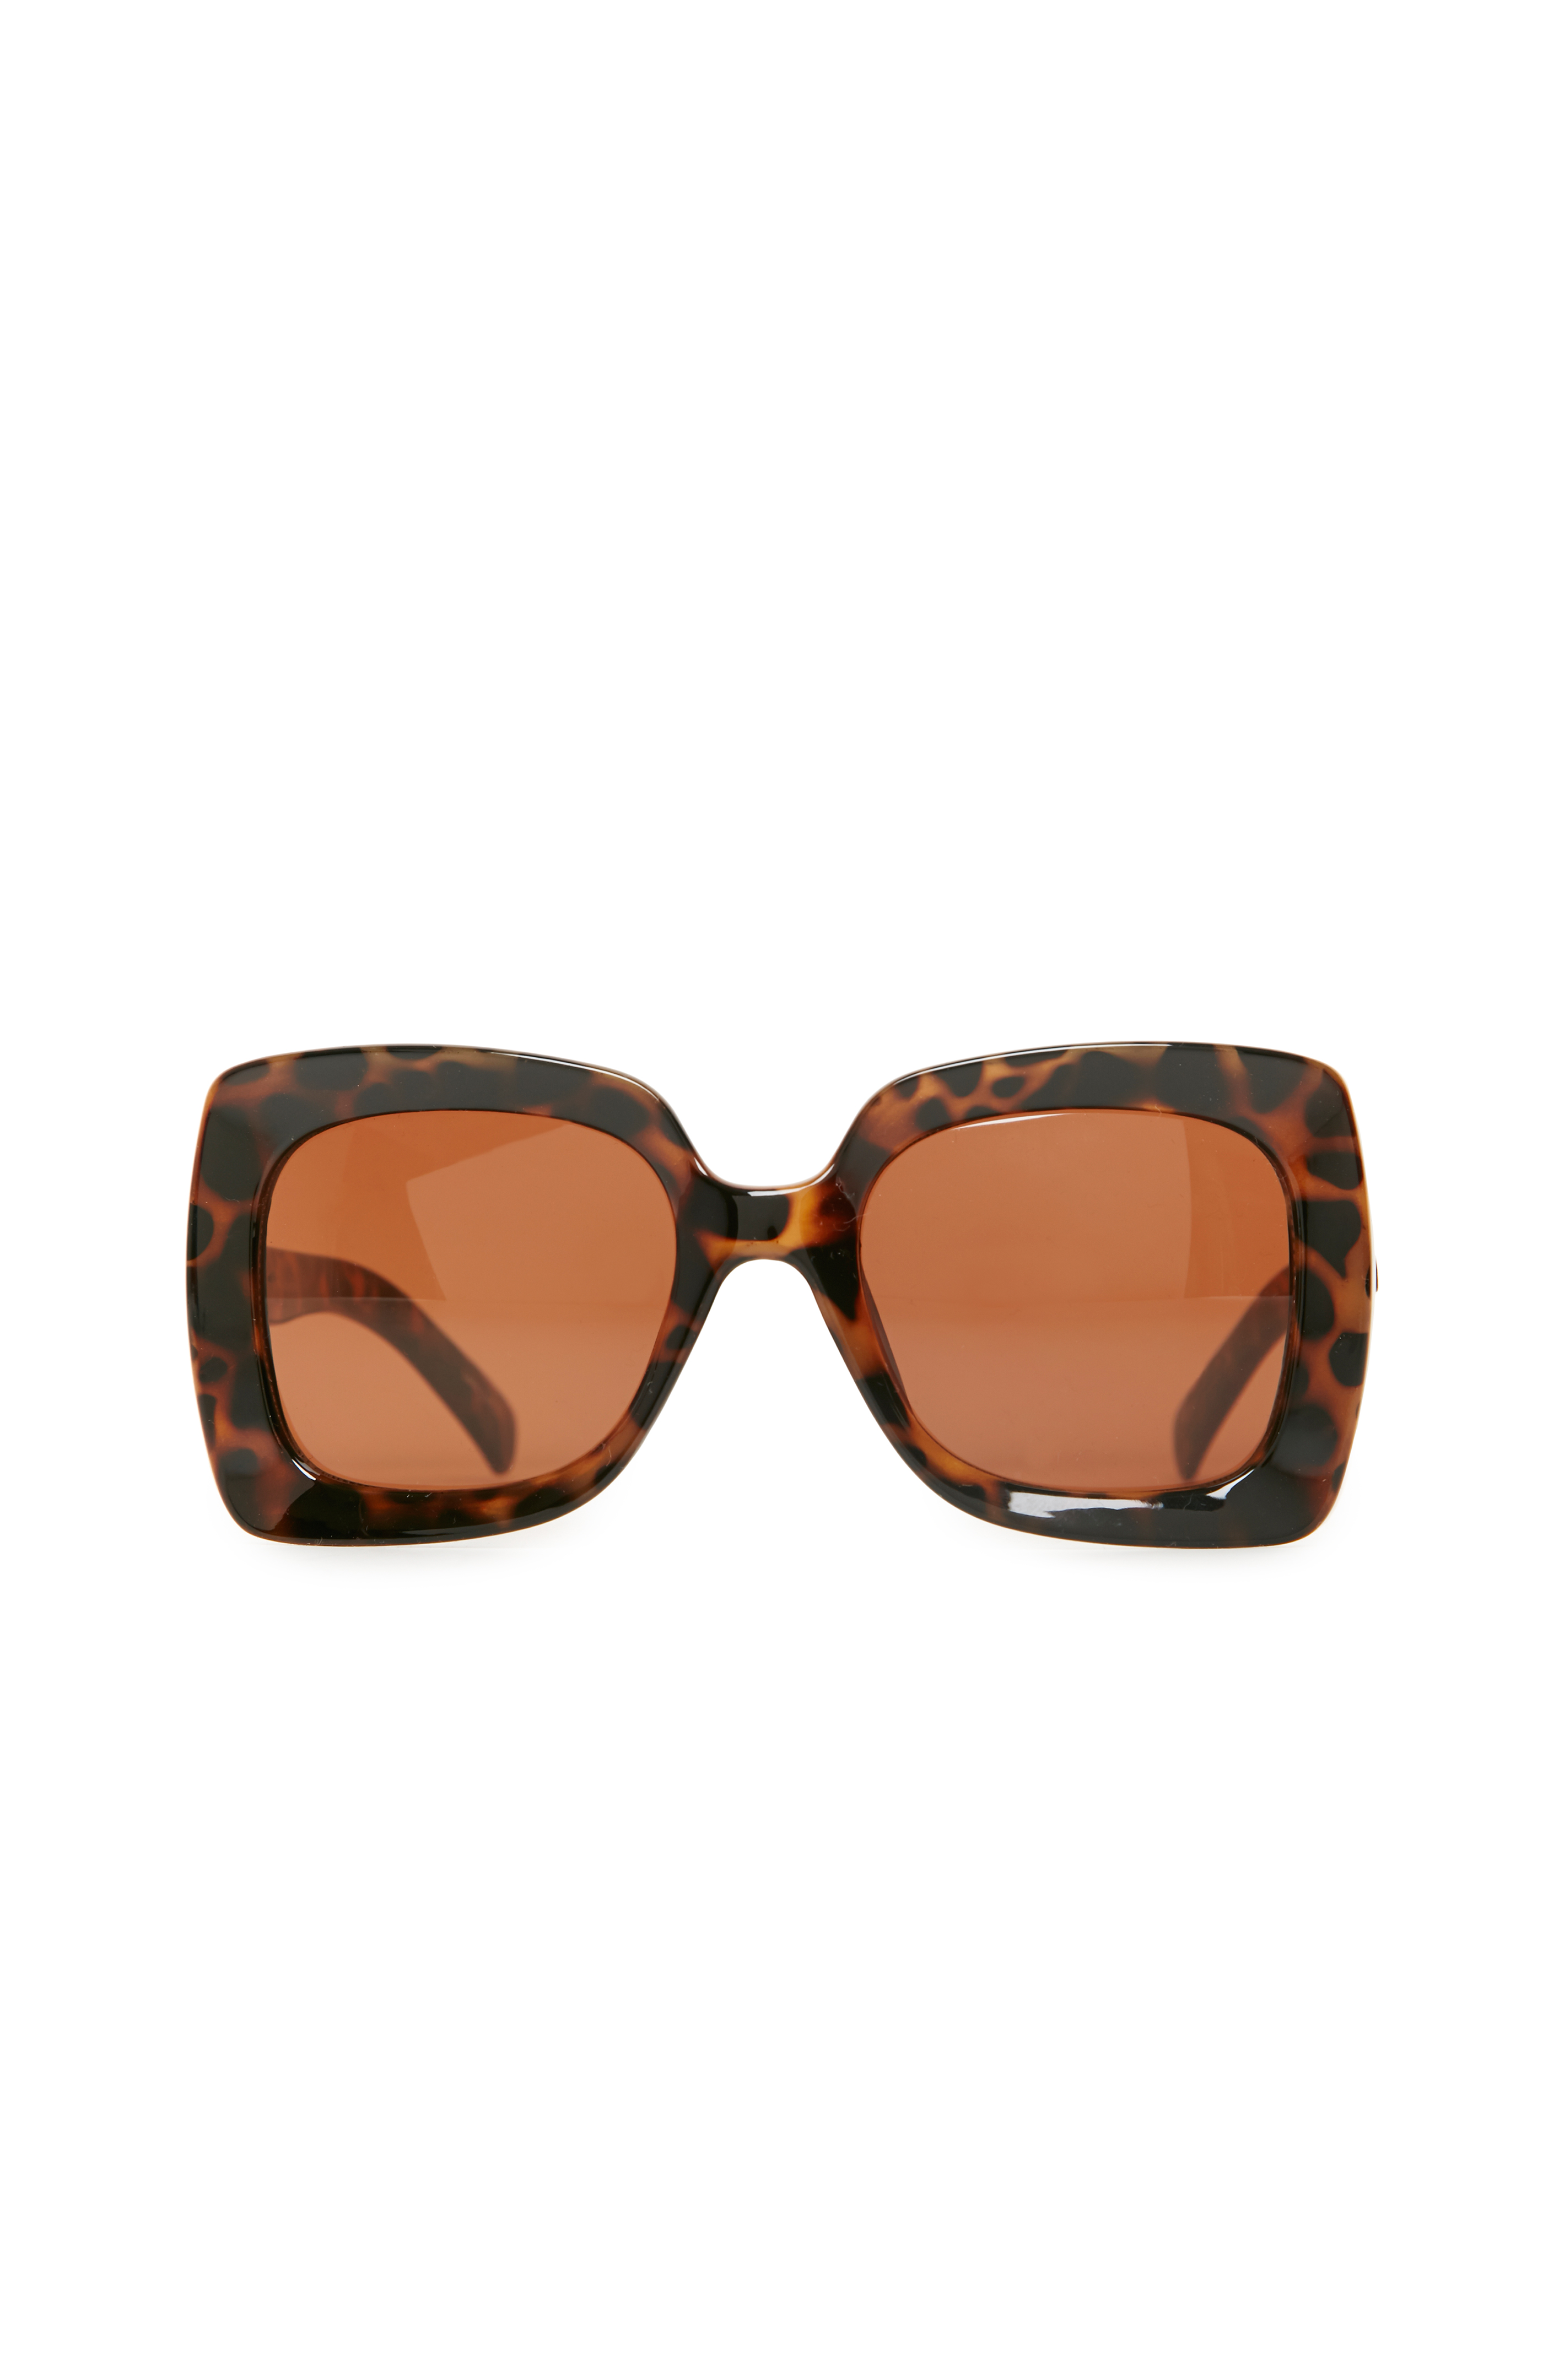 Quay OMG Pinch Square Sunglasses in Brown Multi | DAILYLOOK